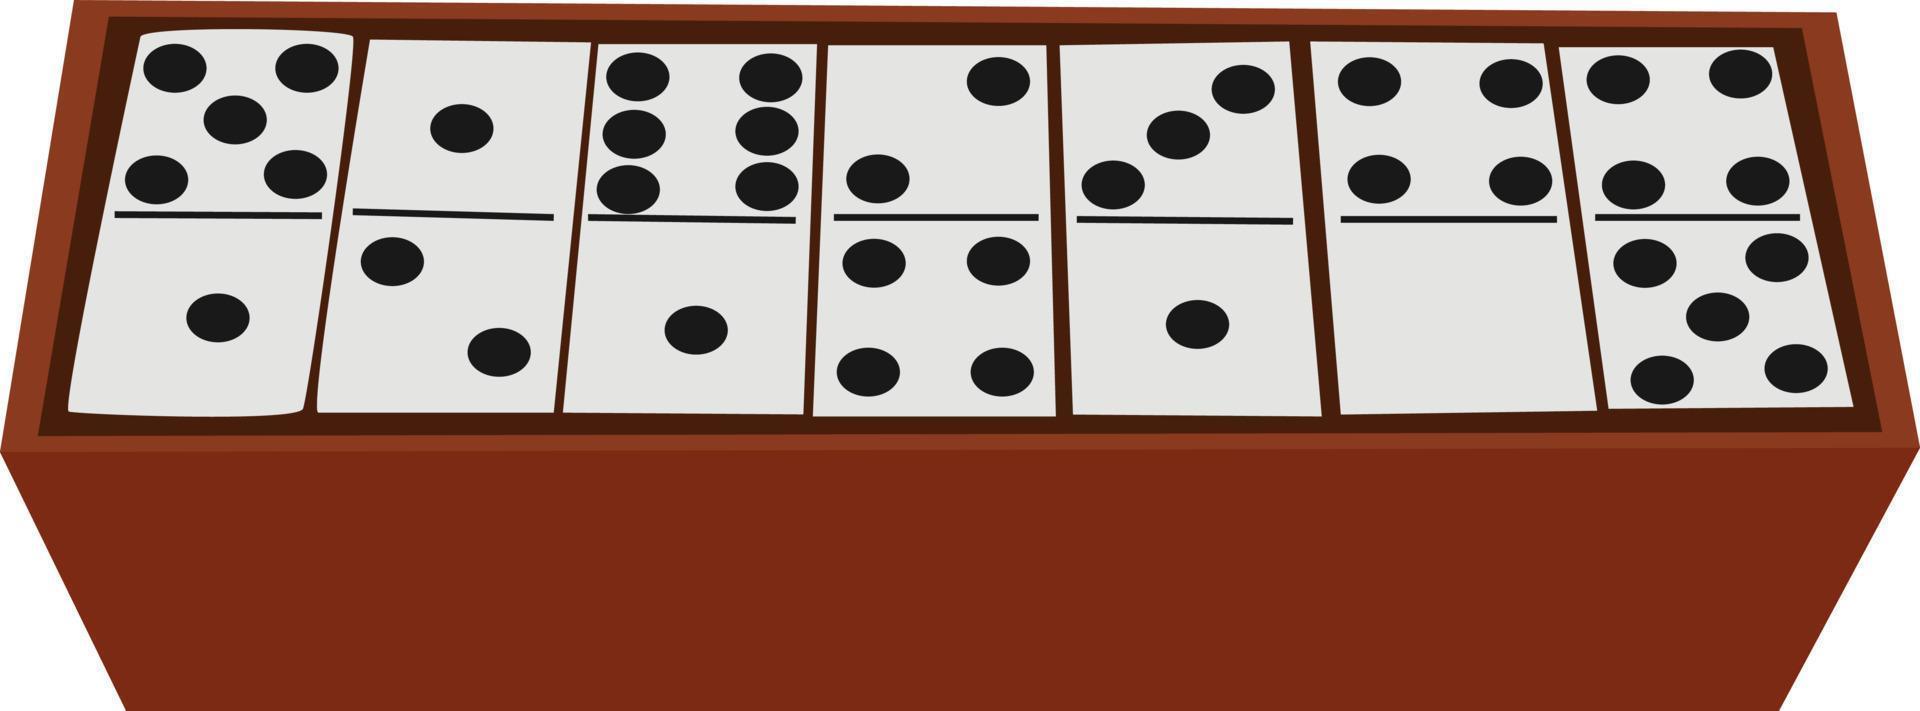 Dominos en boîte, illustration, vecteur sur fond blanc